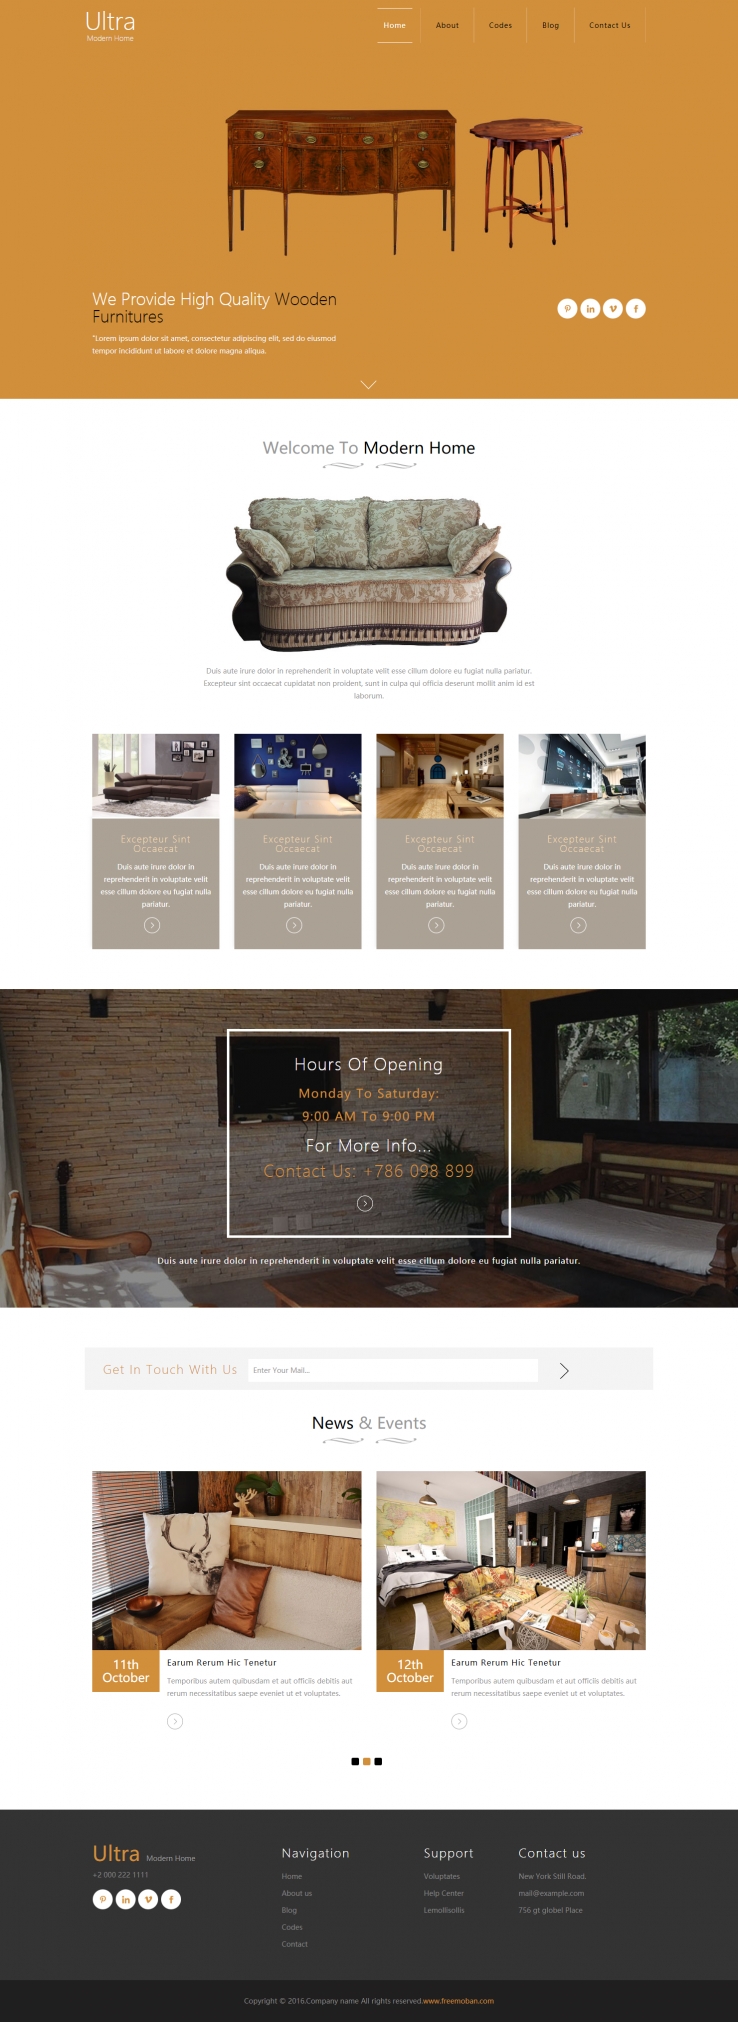 白色宽屏风格的真皮沙发红木家居企业网站模板